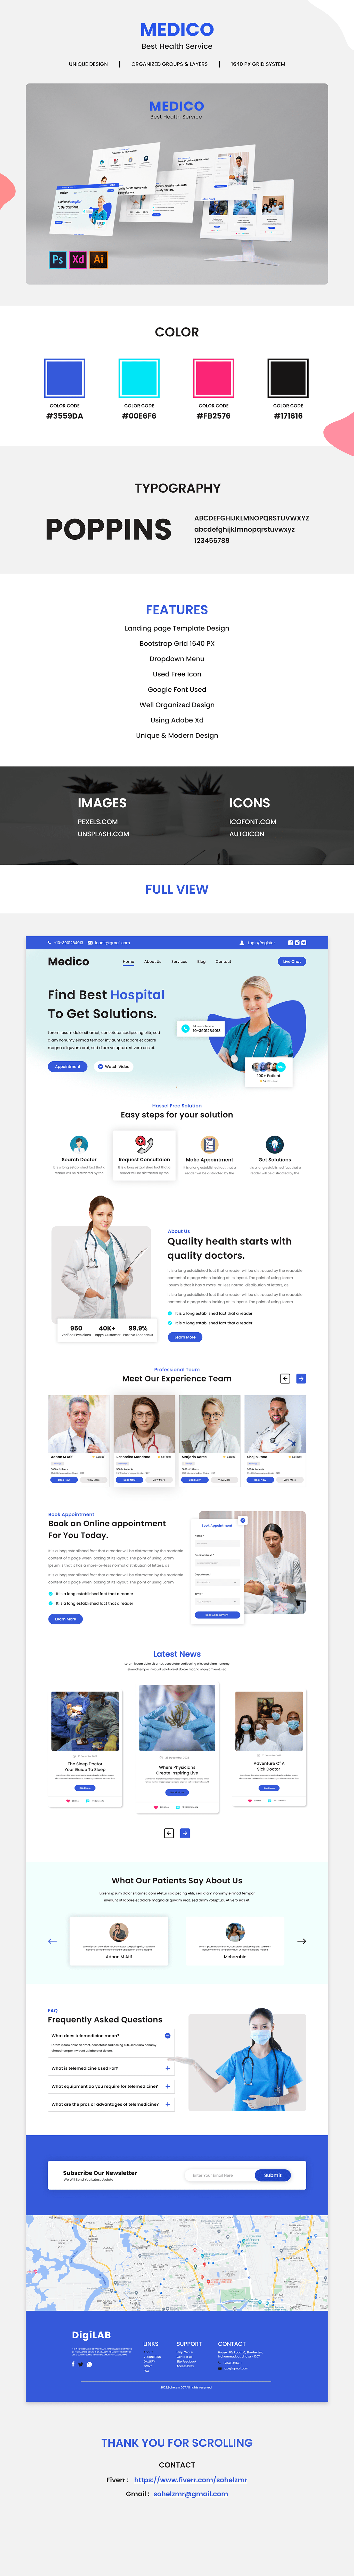 landing page Medical Website medical website design ui design UI/UX user interface ux UX design Web Design  Website Design